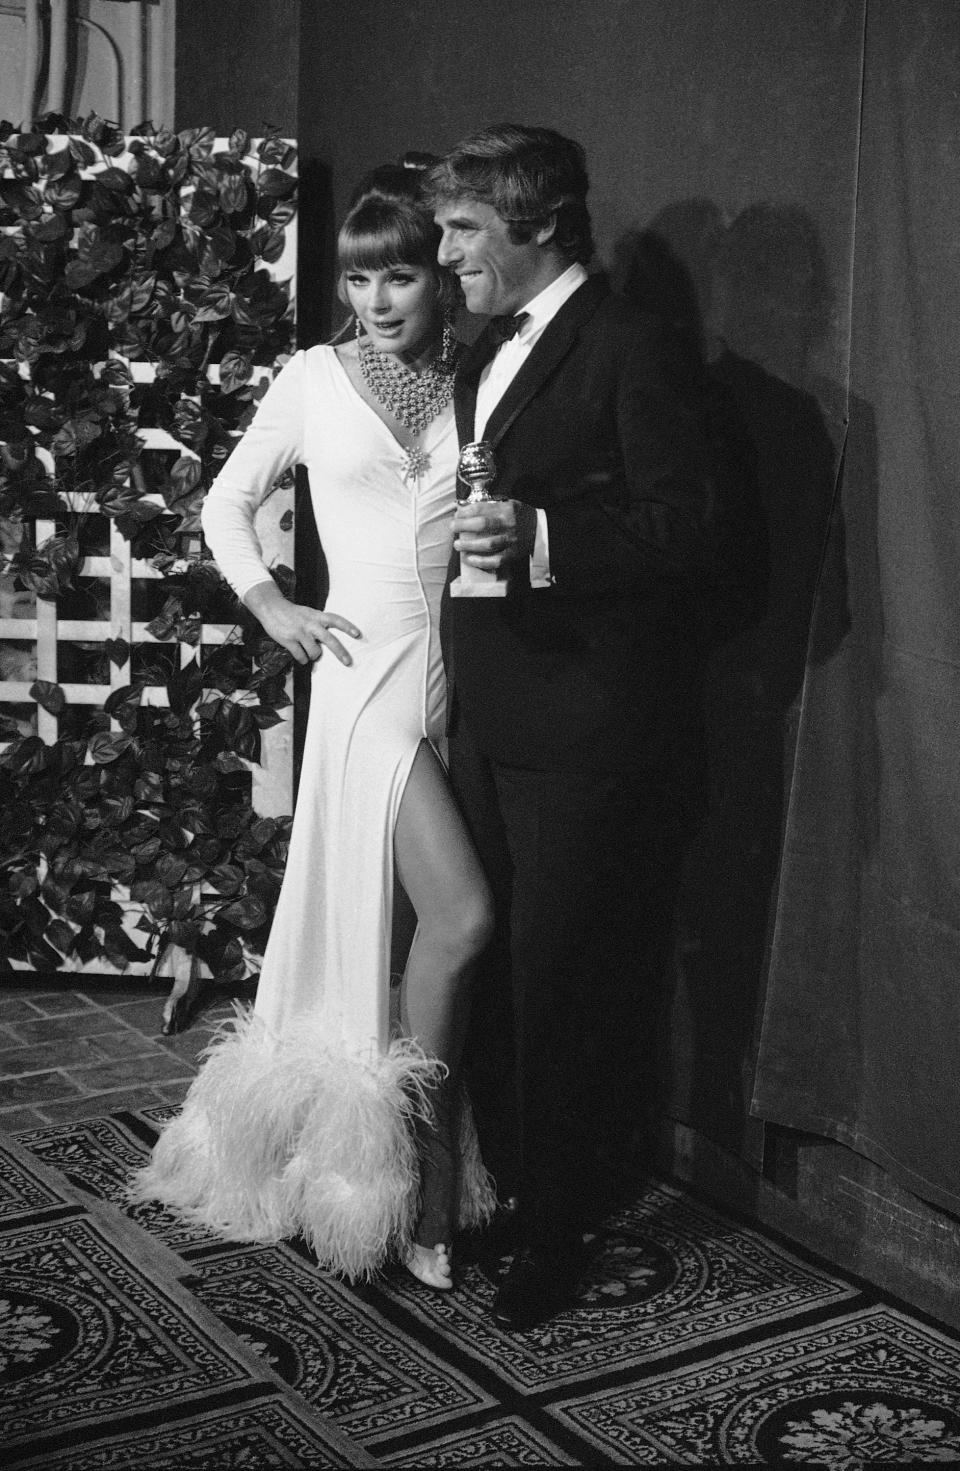 Burt Bacharach and Elke Sommer